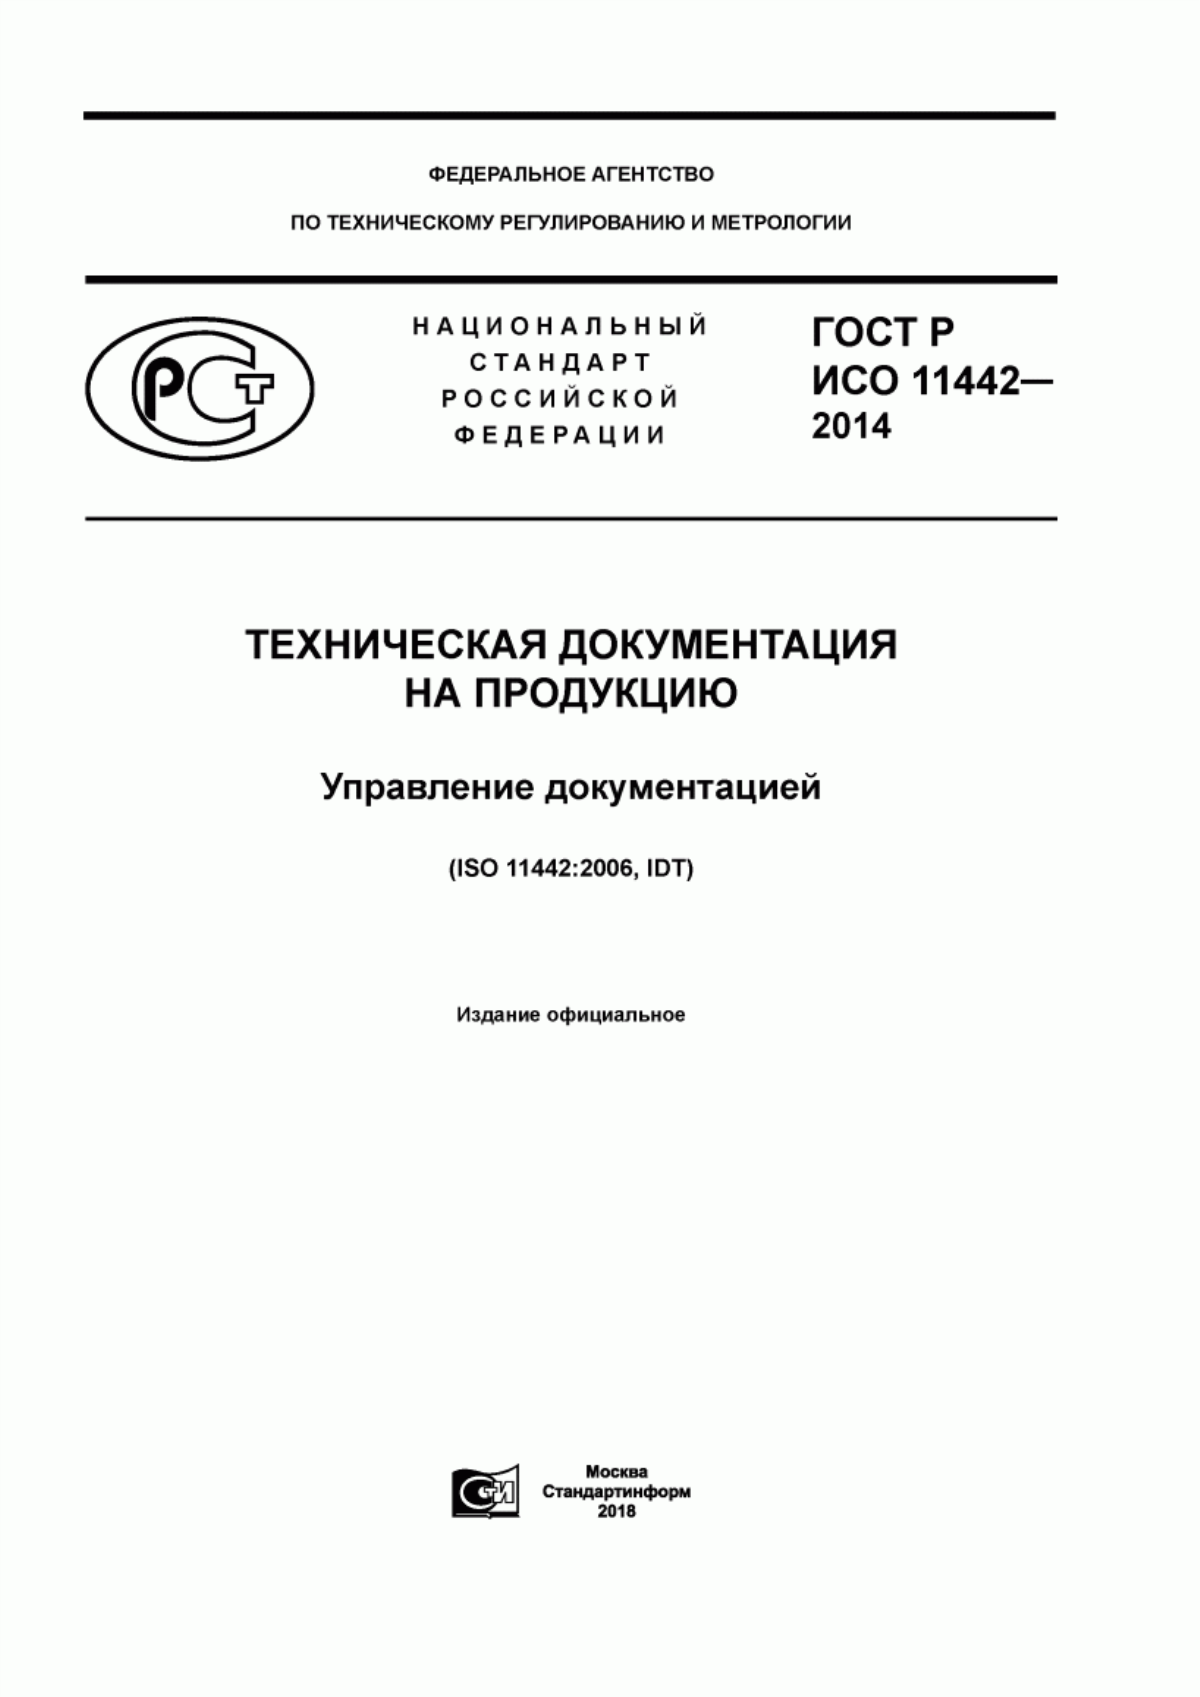 ГОСТ Р ИСО 11442-2014 Техническая документация на продукцию. Управление документацией